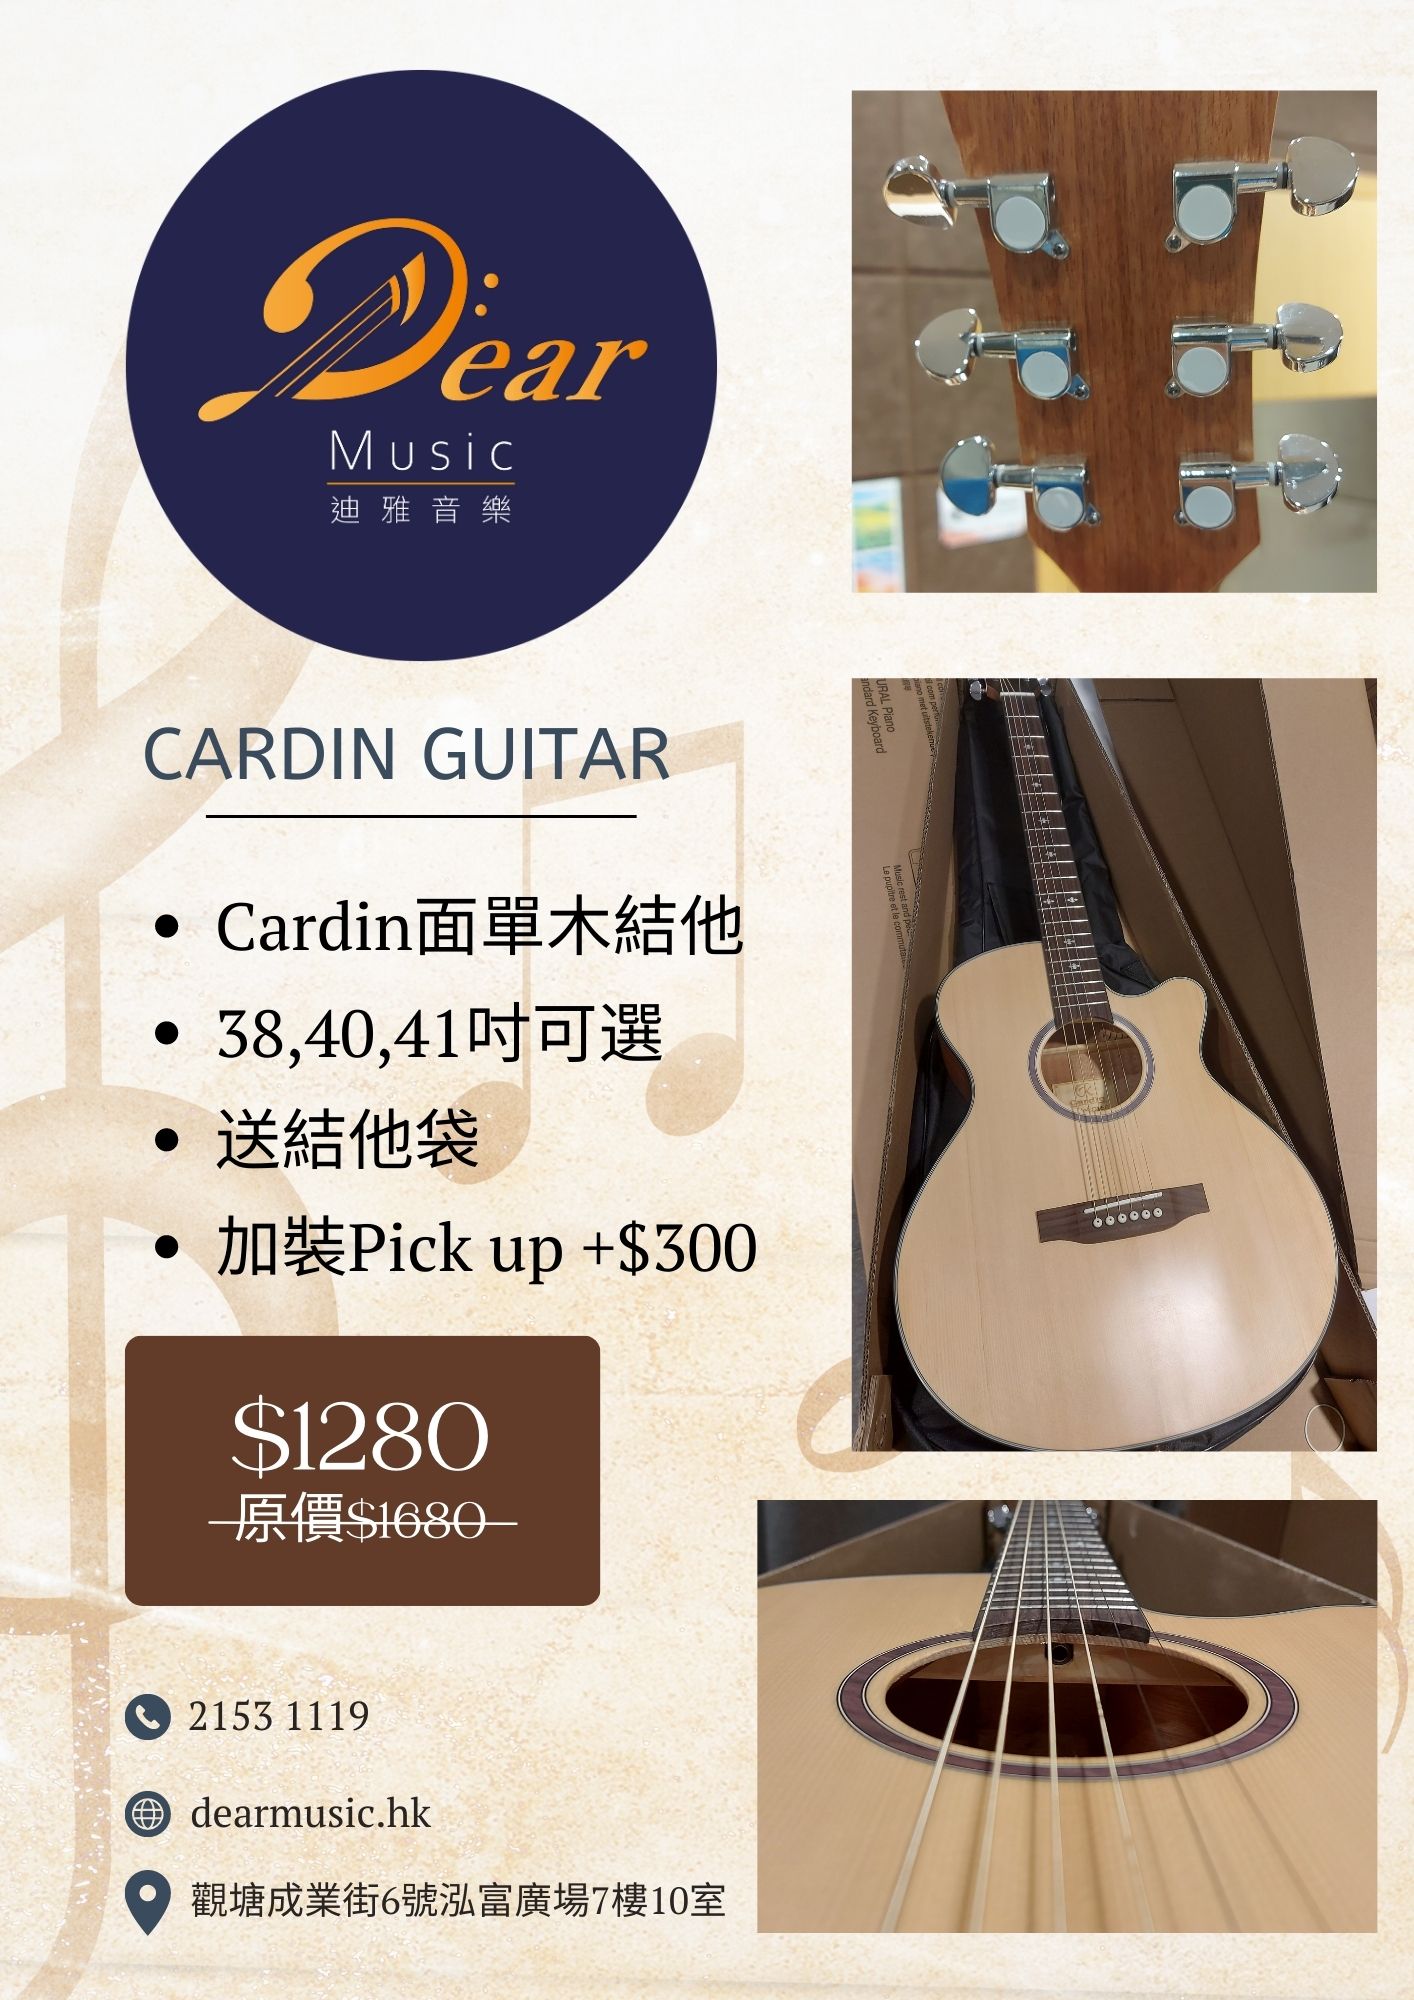 Cardin guitar